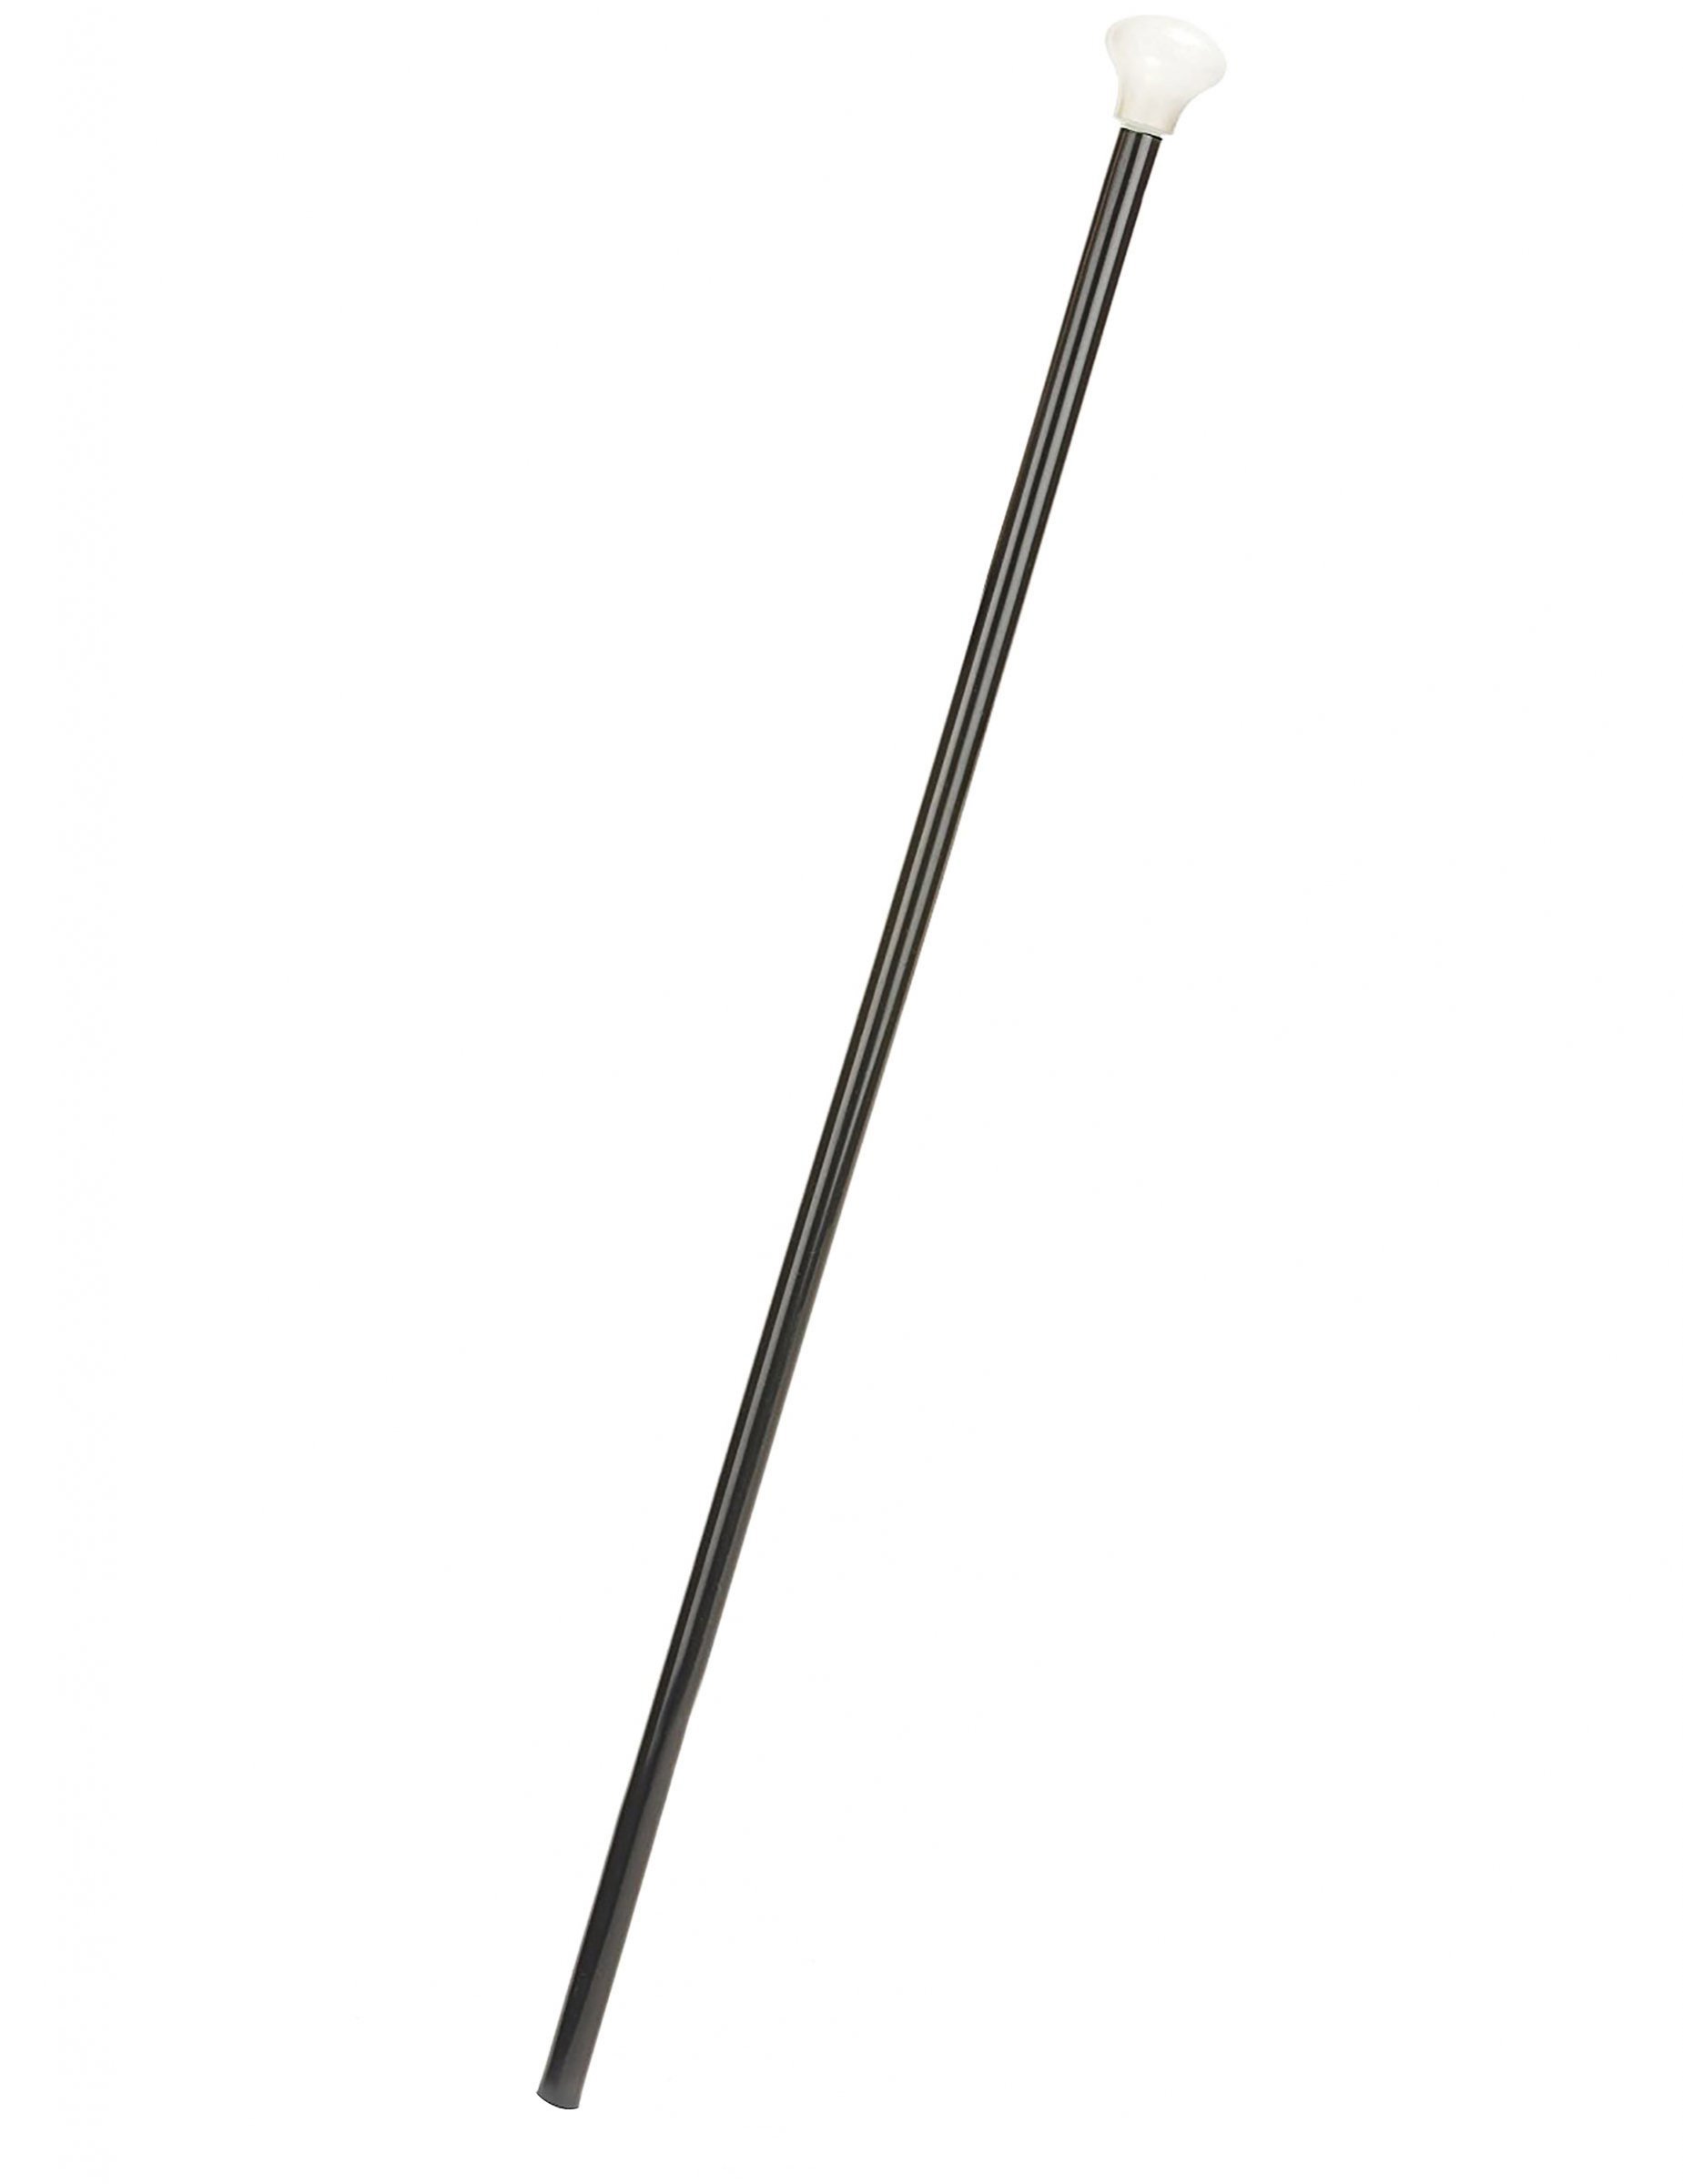 Dandy-Stock Gehstock schwarz-weiss 80cm von KARNEVAL-MEGASTORE